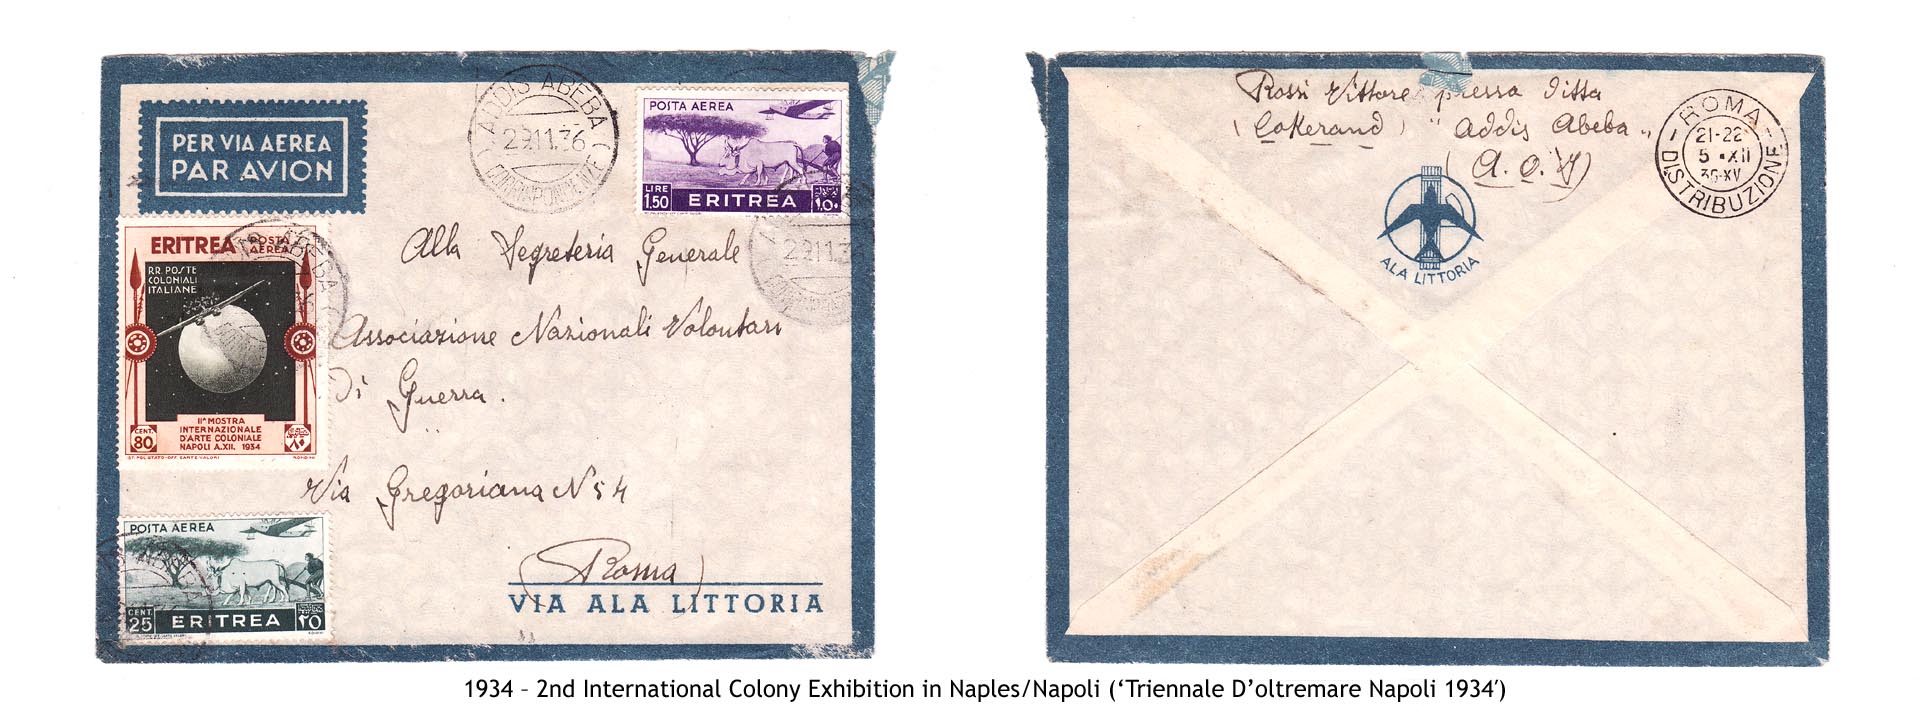 1934 – Eritrea 2nd International Colony Exhibition in Naples-Napoli (Triennale Doltremare Napoli 1934)